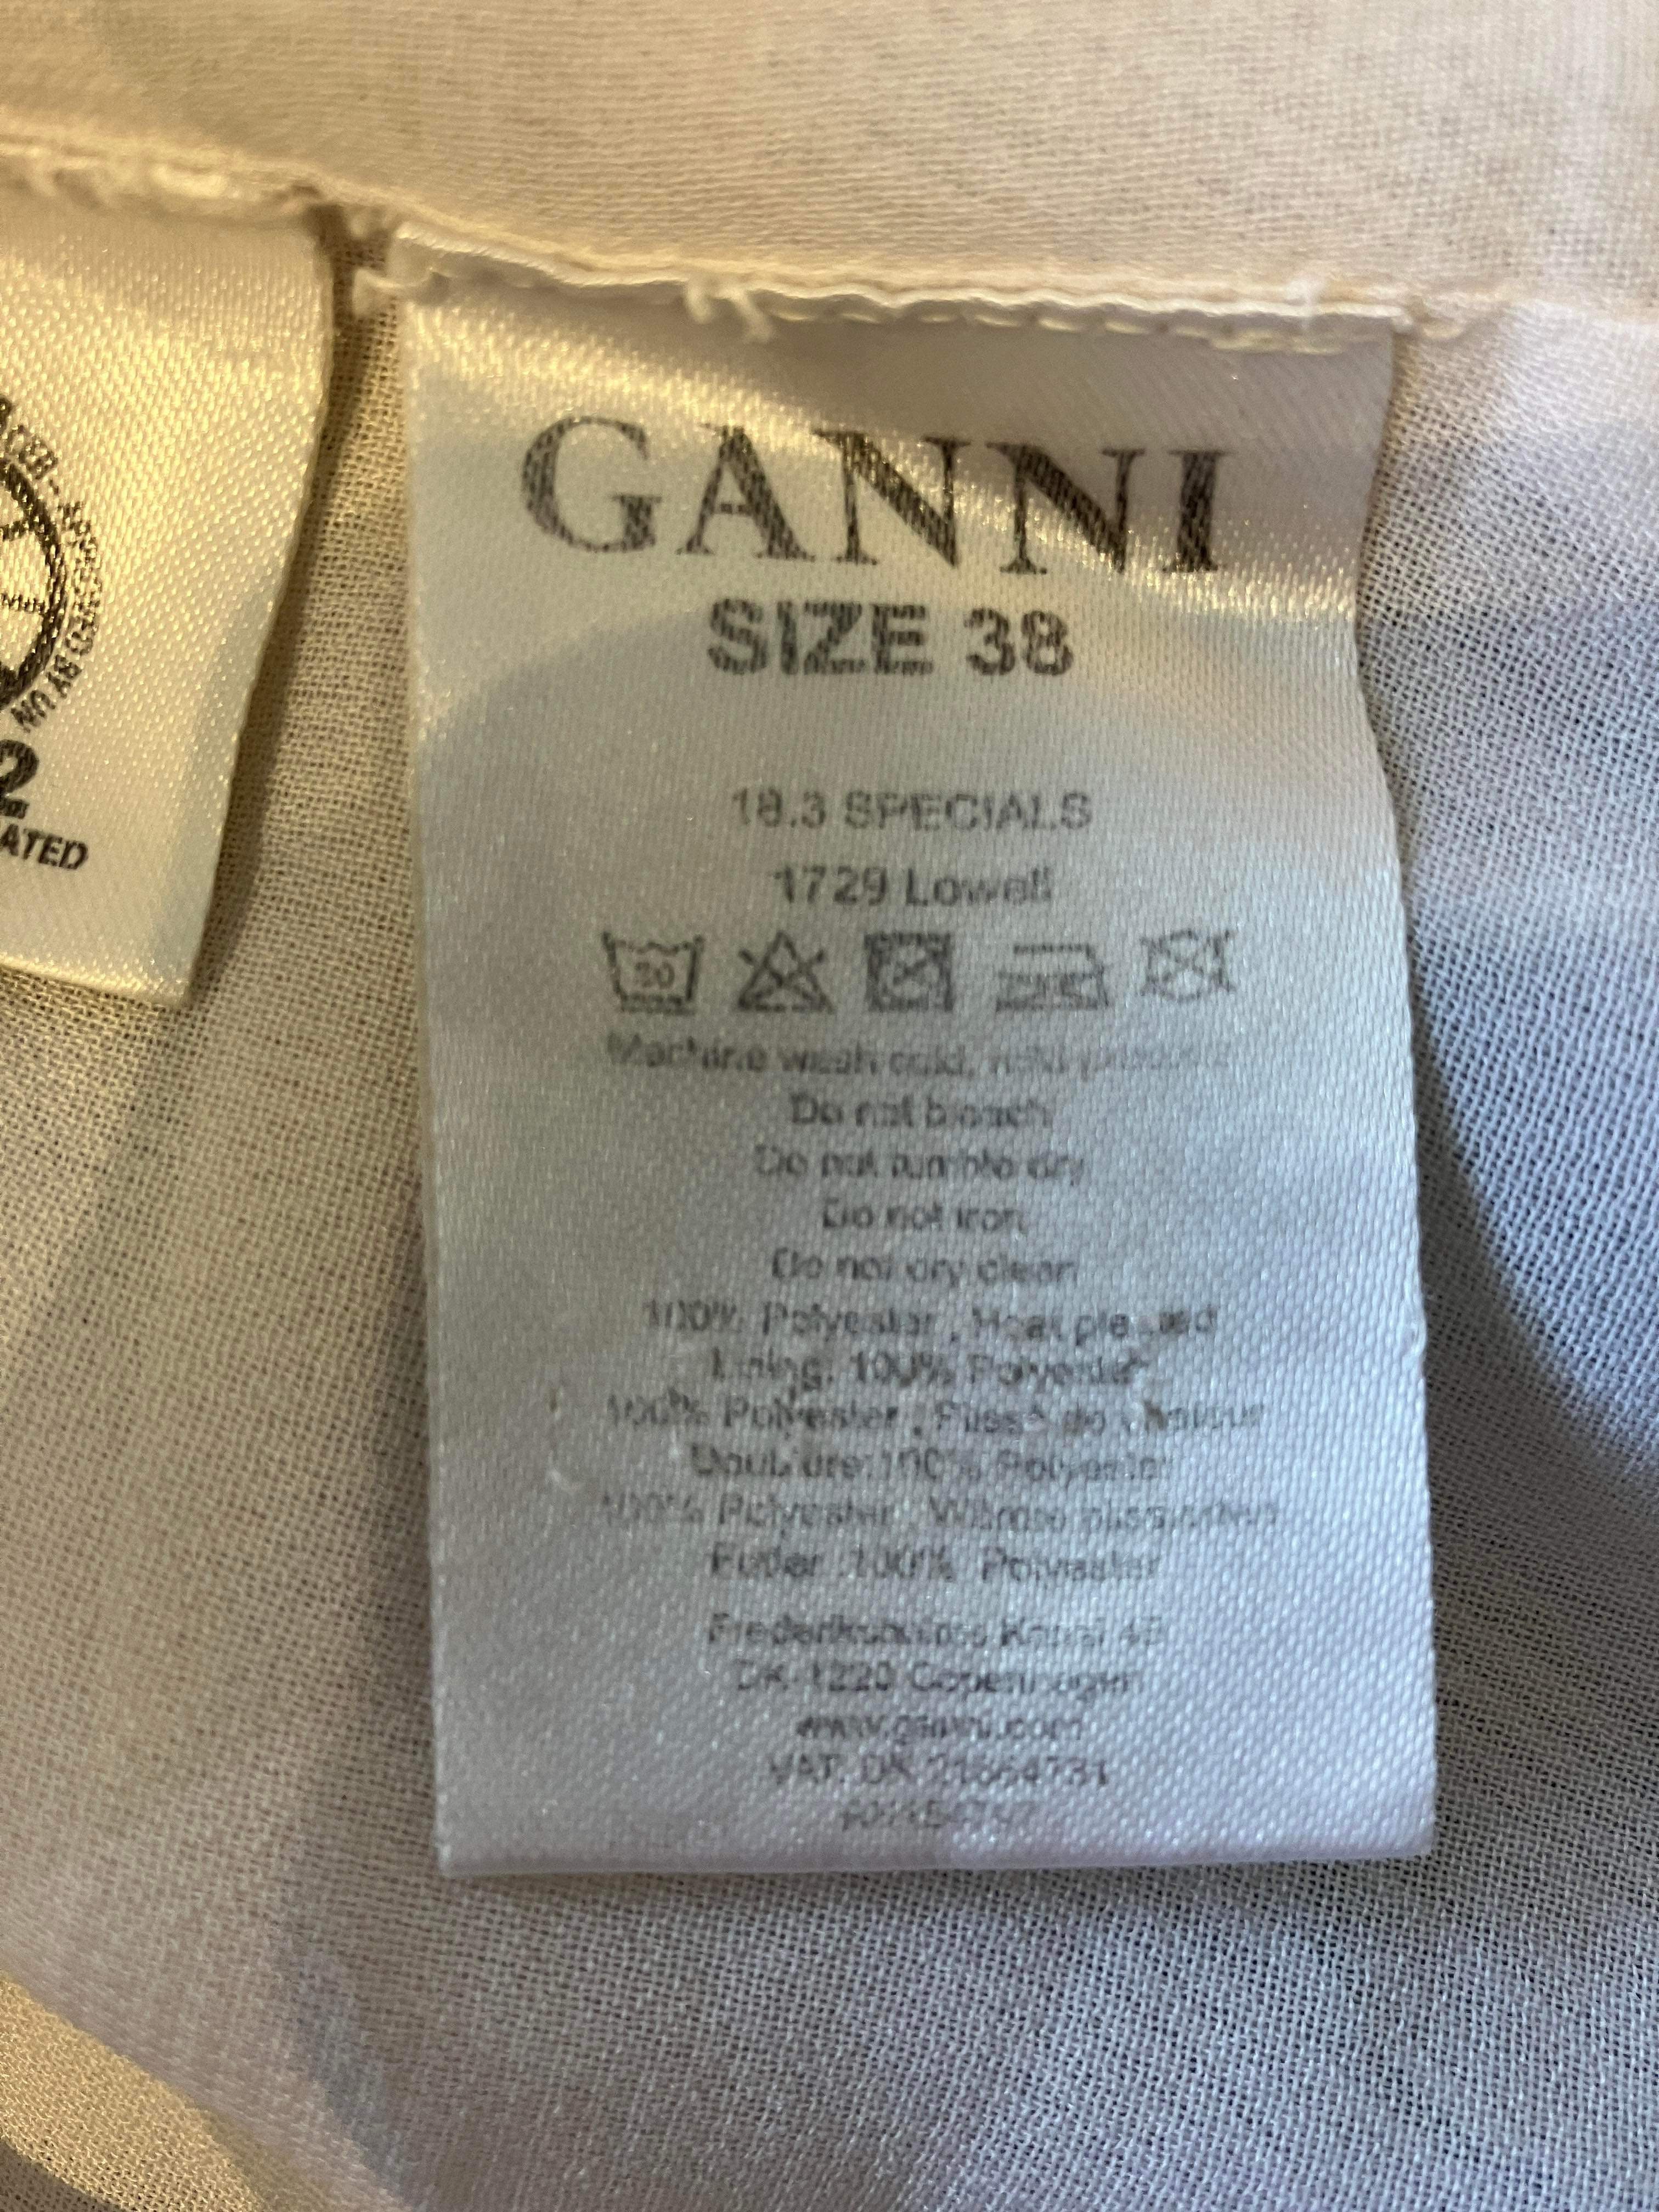 Ganni - Nederdel - Size: 38